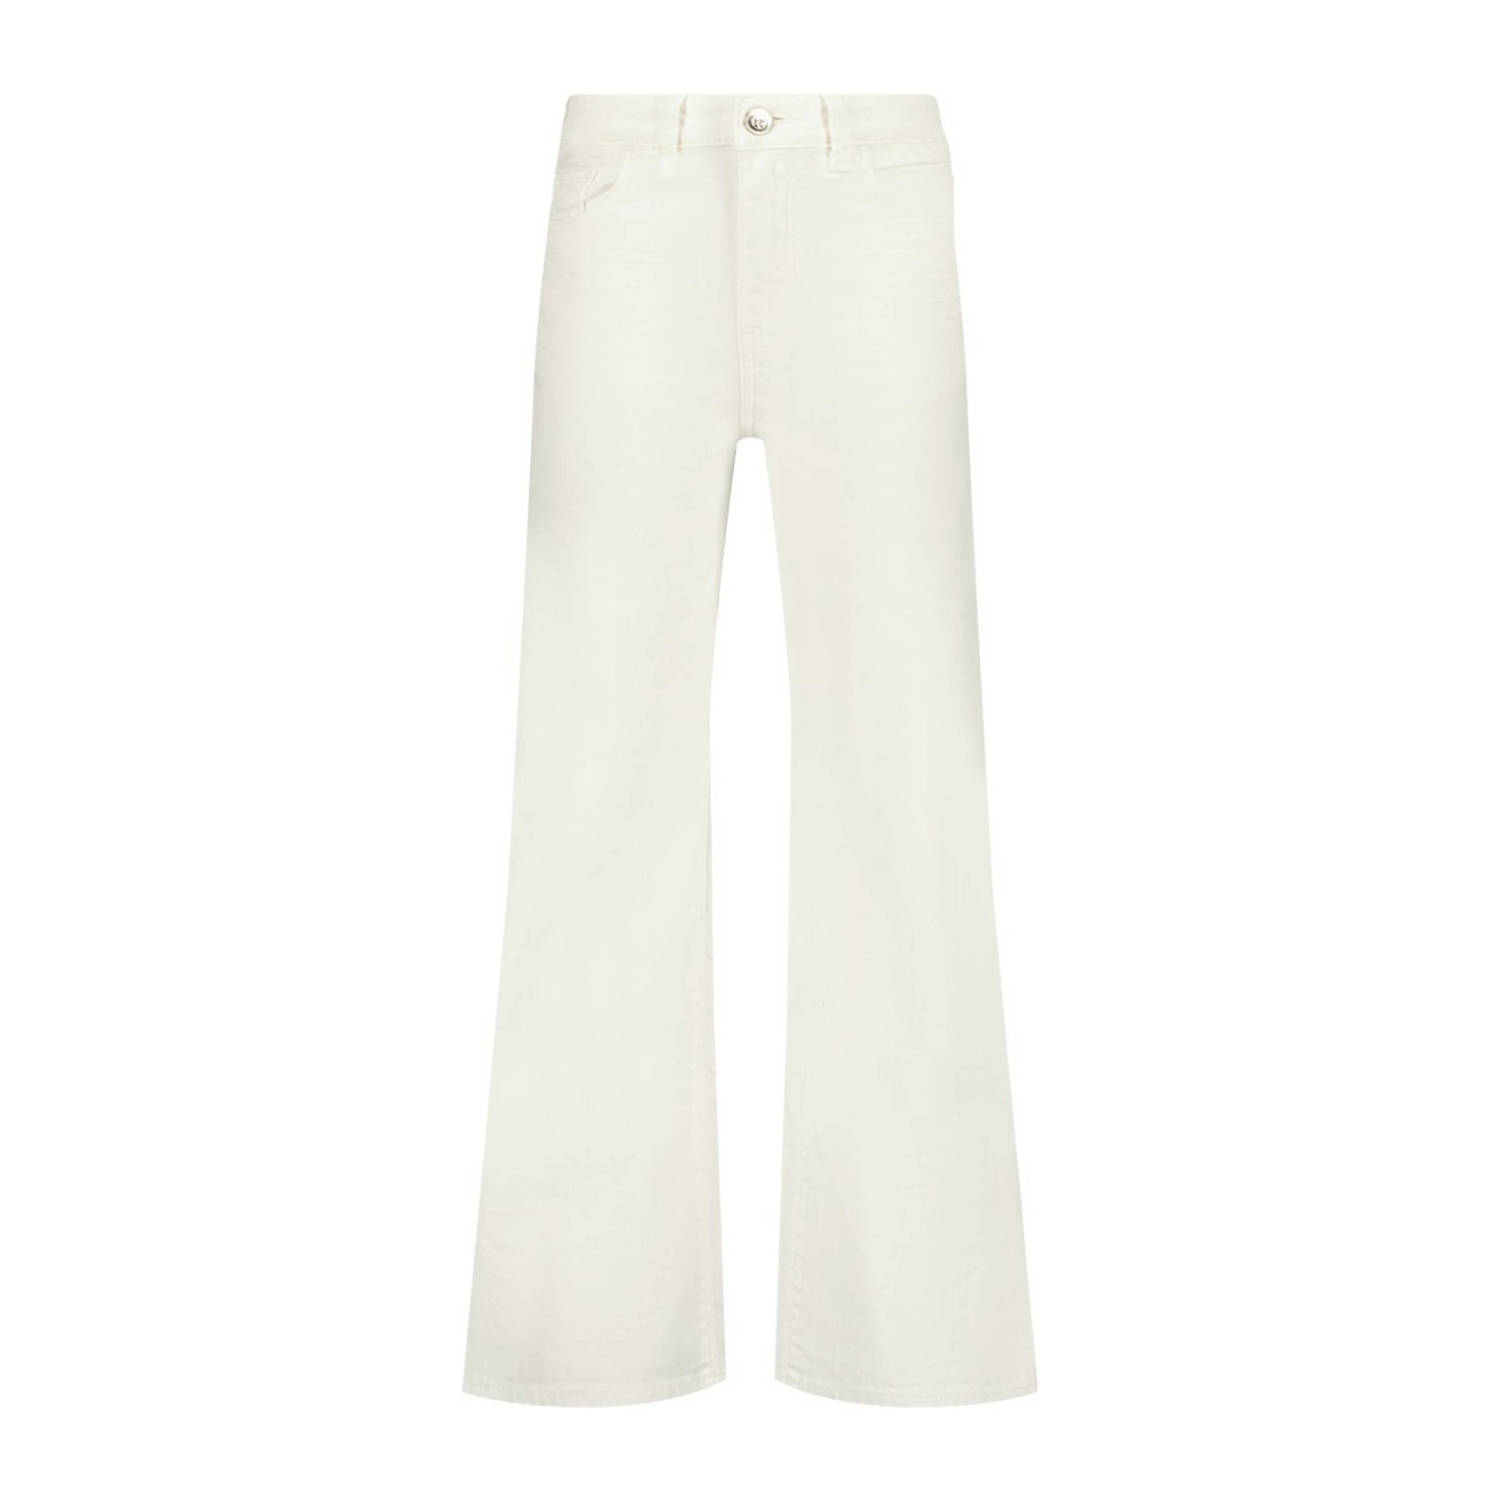 Raizzed wide leg jeans Mississippi white Wit Meisjes Stretchdenim Effen 134